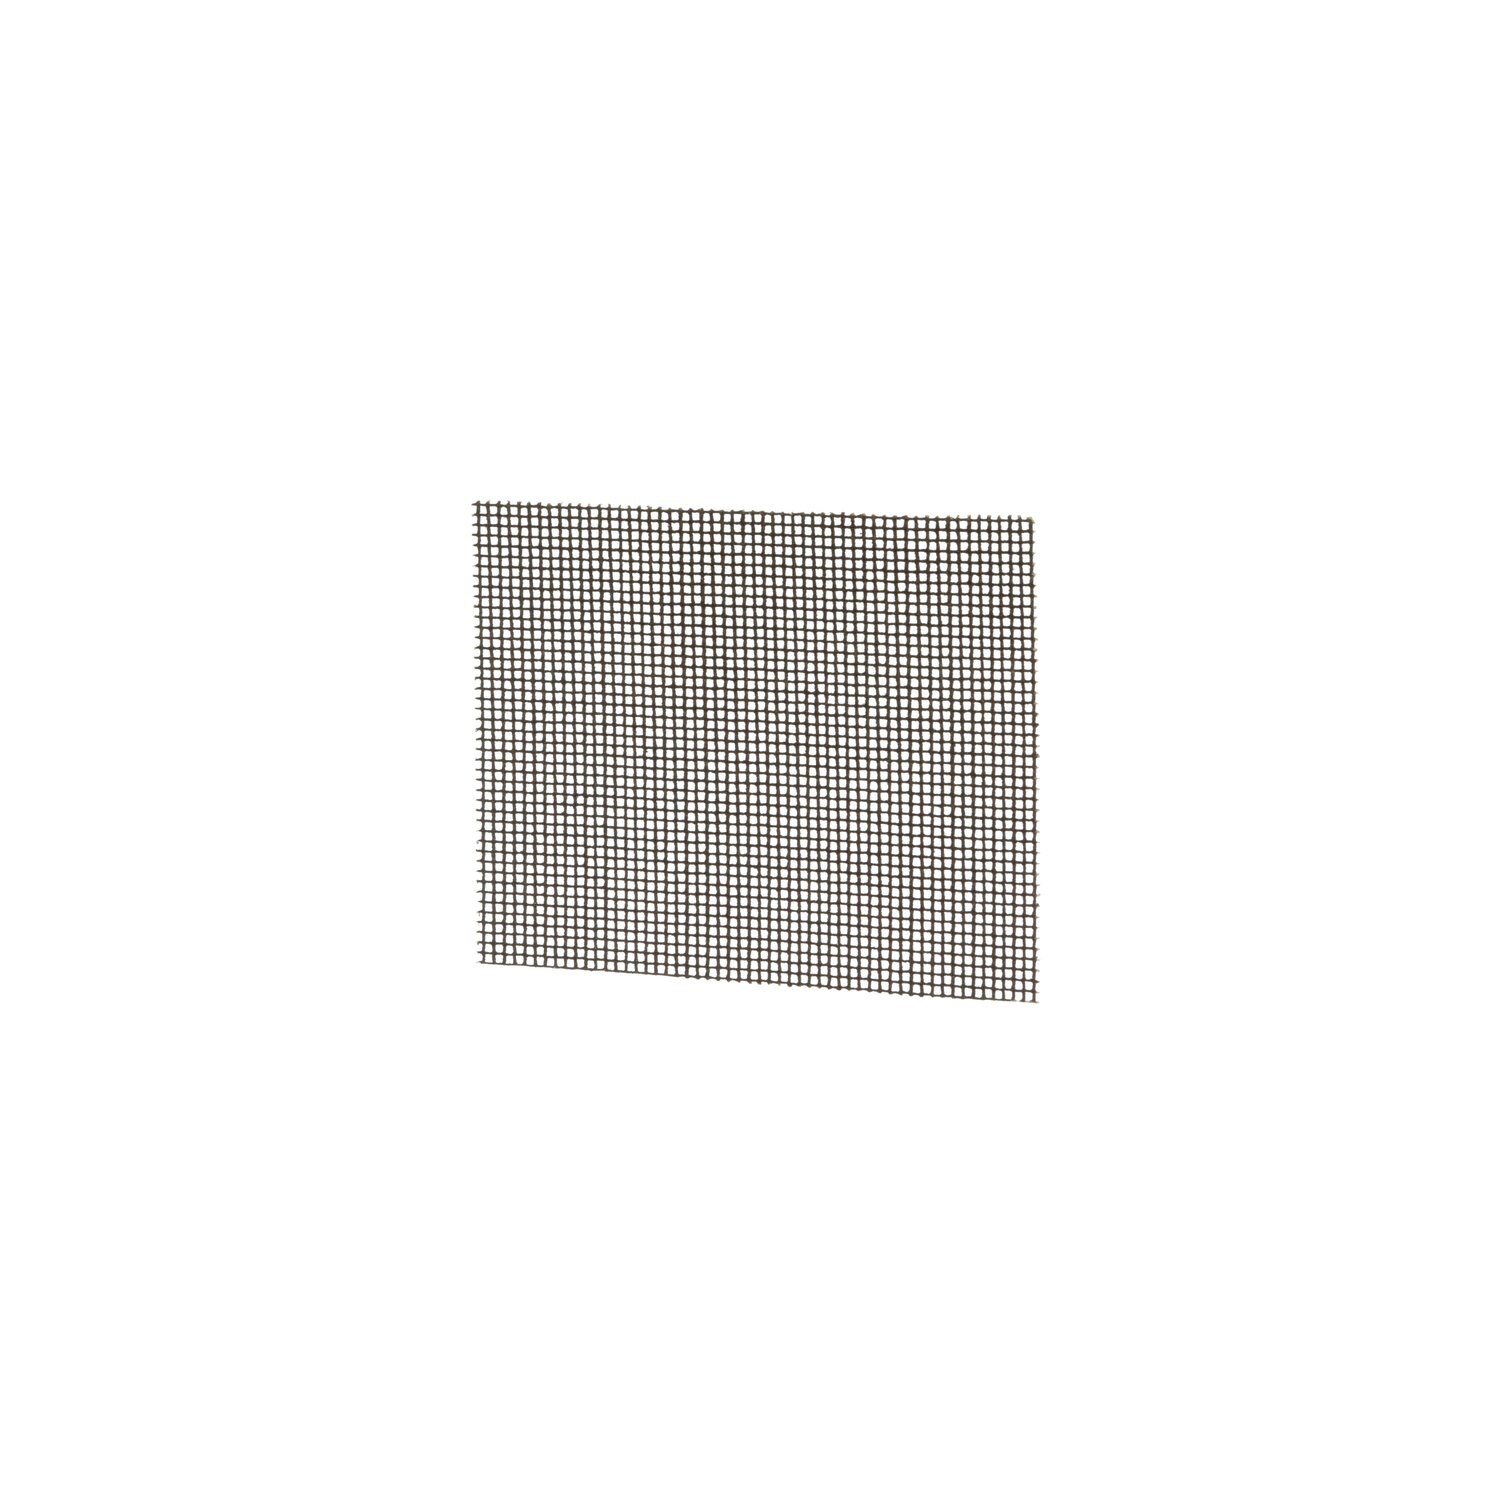 7100232085 - Niagara Griddle Screen 200N, 4 in x 5.5 in, 20 per pack, 10 packs per case